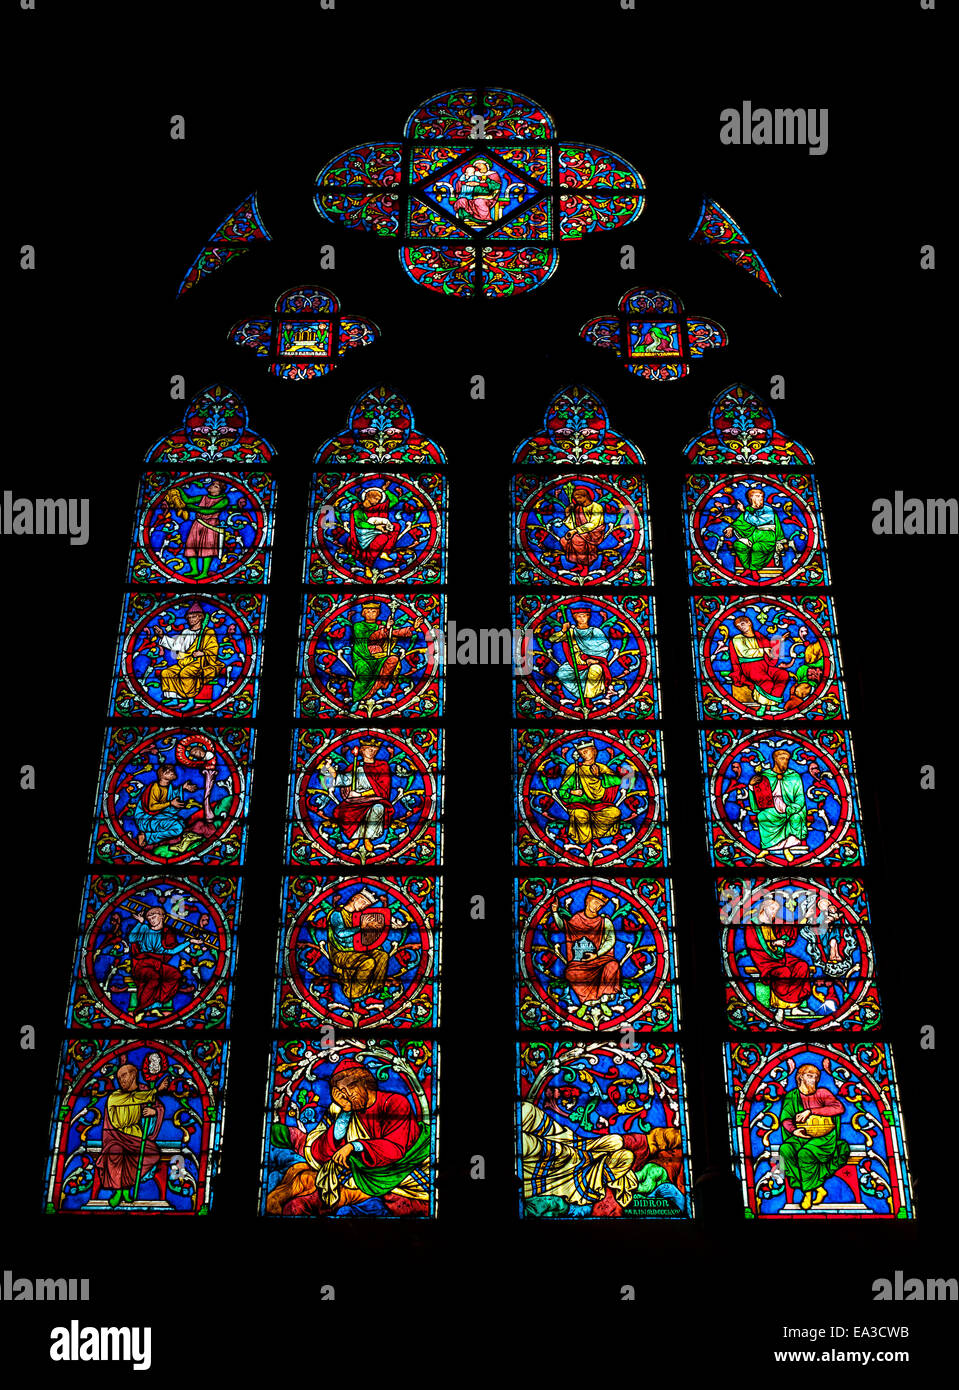 Paris, France - 11 août 2014 : grand vitrail coloré dans l'obscurité de l'intérieur de la cathédrale Notre Dame de Paris, France Banque D'Images